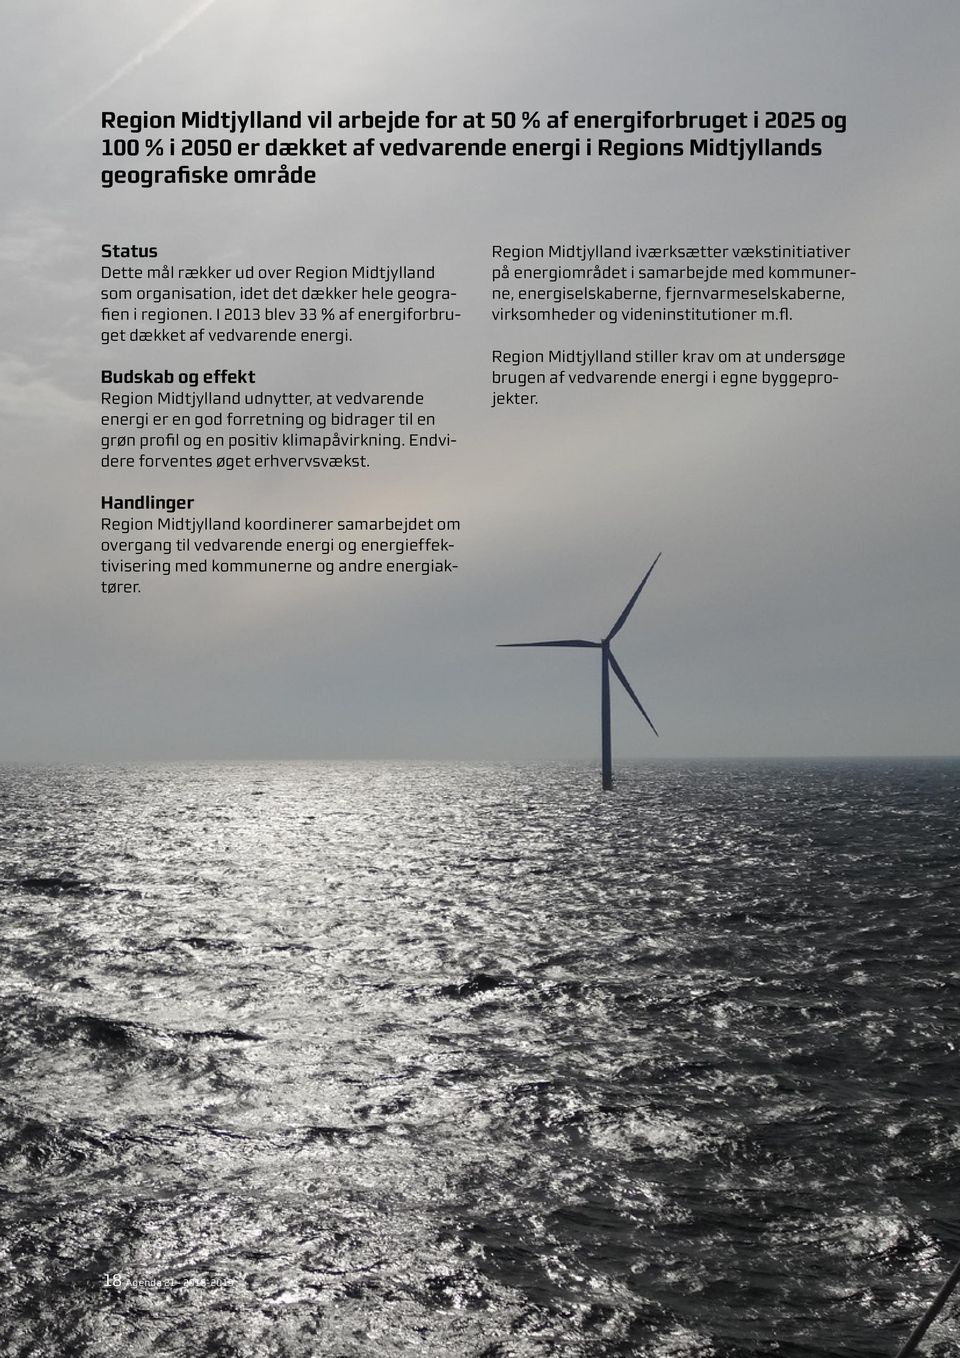 Region Midtjylland udnytter, at vedvarende energi er en god forretning og bidrager til en grøn profil og en positiv klimapåvirkning. Endvidere forventes øget erhvervsvækst.